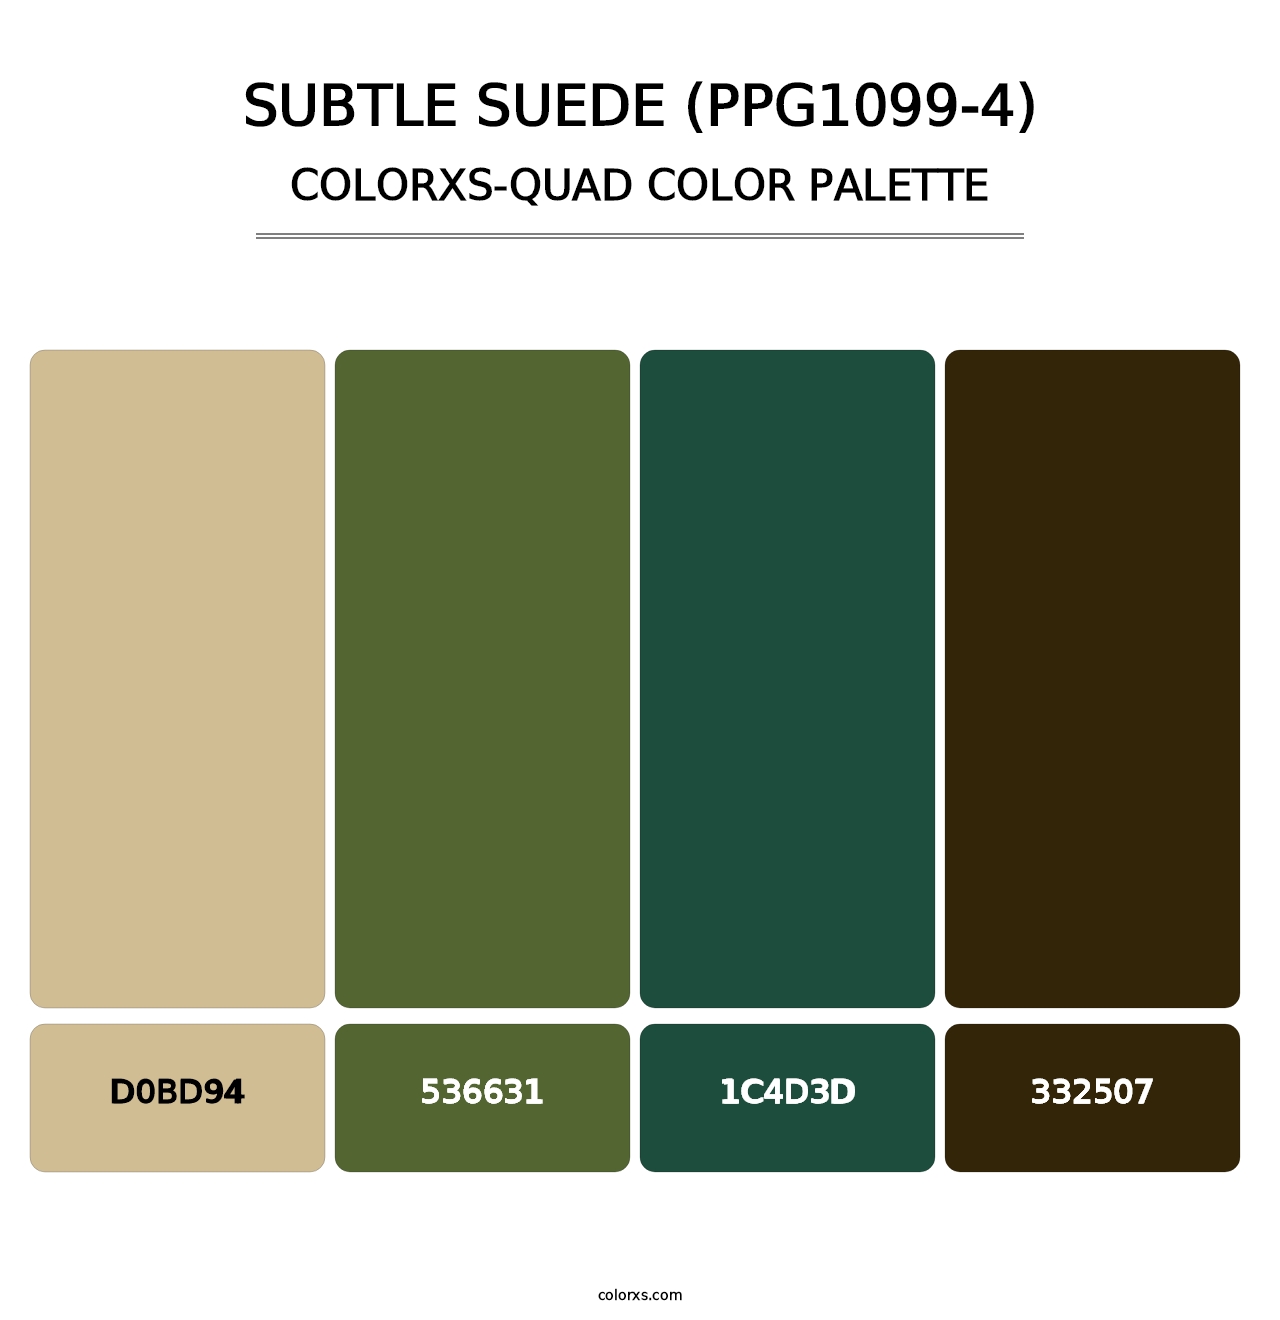 Subtle Suede (PPG1099-4) - Colorxs Quad Palette